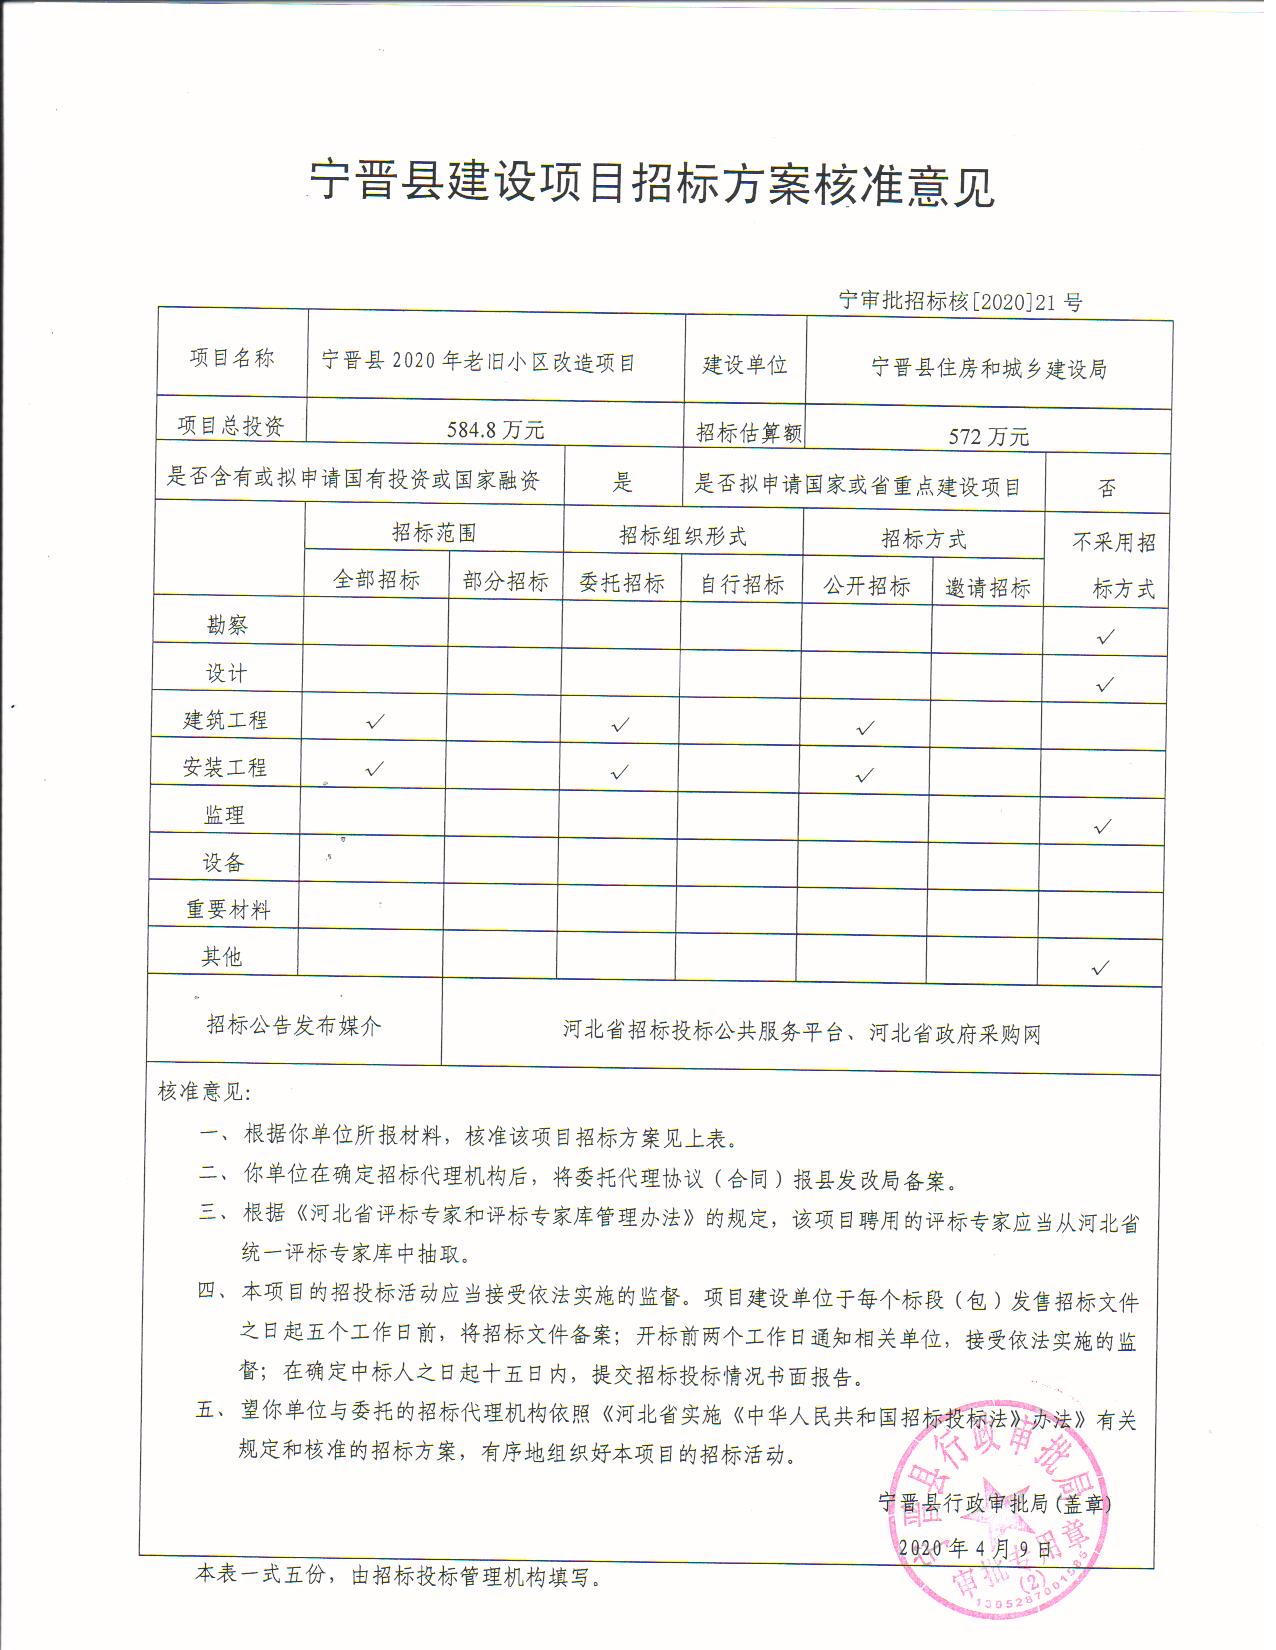 宁晋县2020年老旧小区改造项目招标方案核准意见.jpg